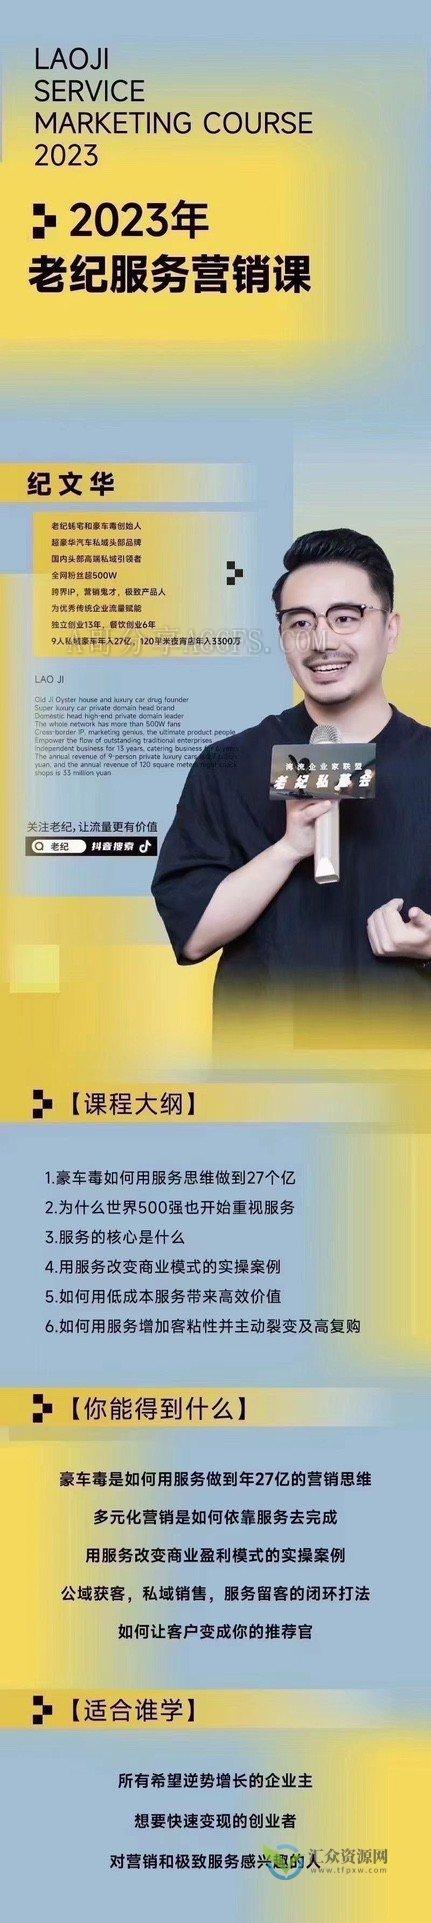 【老纪服务营销课】杭州第五届营销课，传统企业如何通过抖音短视频转型插图